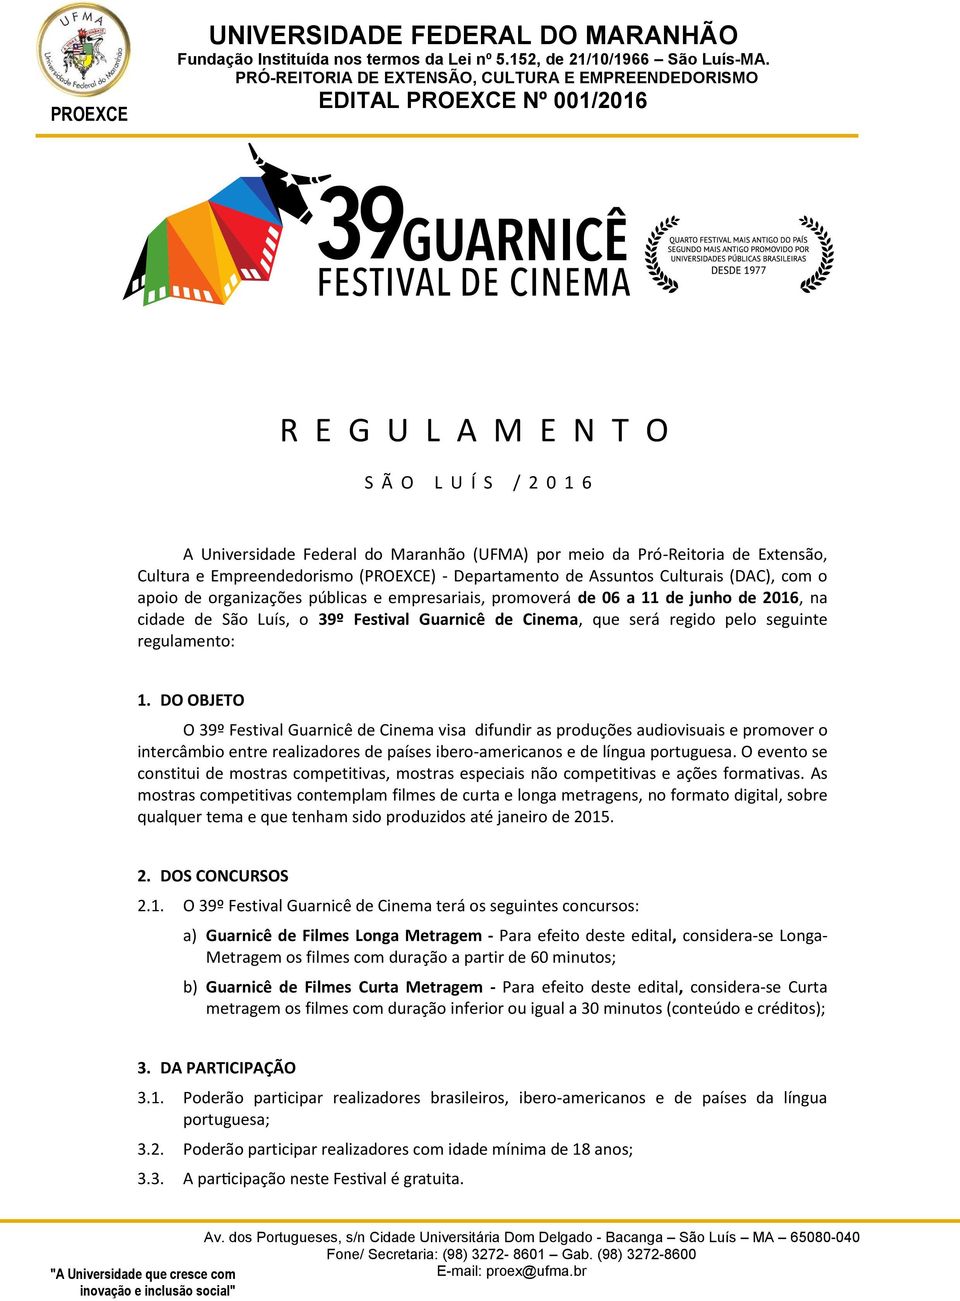 1. DO OBJETO O 39º Festival Guarnicê de Cinema visa difundir as produções audiovisuais e promover o intercâmbio entre realizadores de países ibero-americanos e de língua portuguesa.